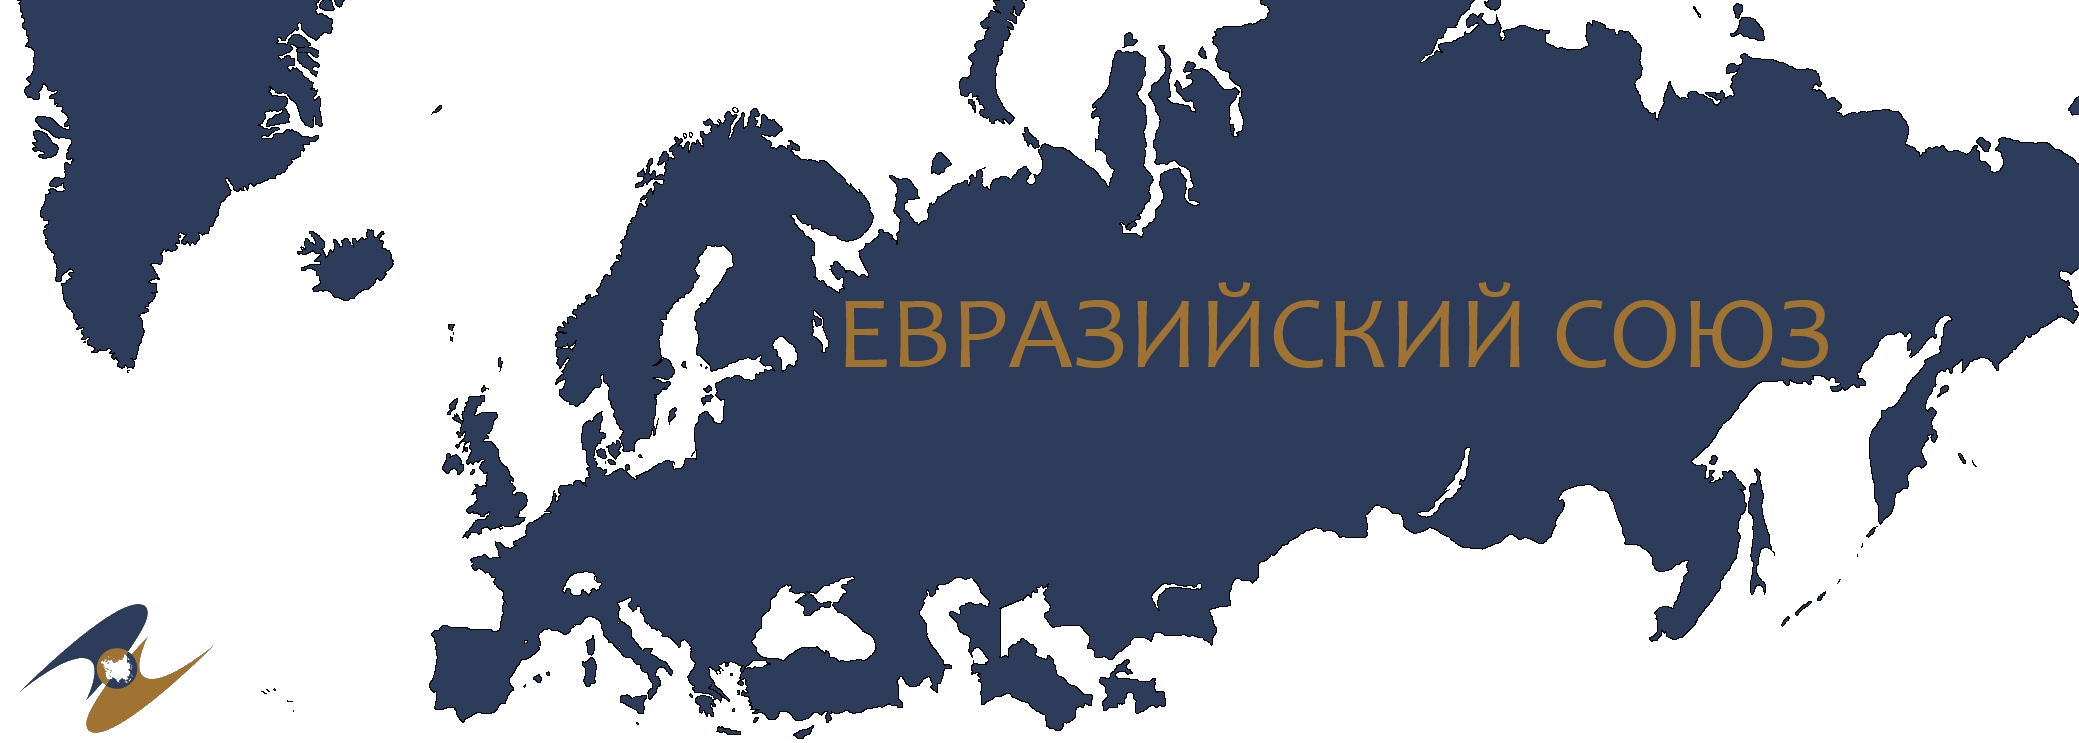 Союз евразия. ЕАС Евразийский экономический Союз. Карта таможенного Союза ЕАЭС. Евразийский экономический Союз страны на карте. Евразийский Союз (ЕАС),.